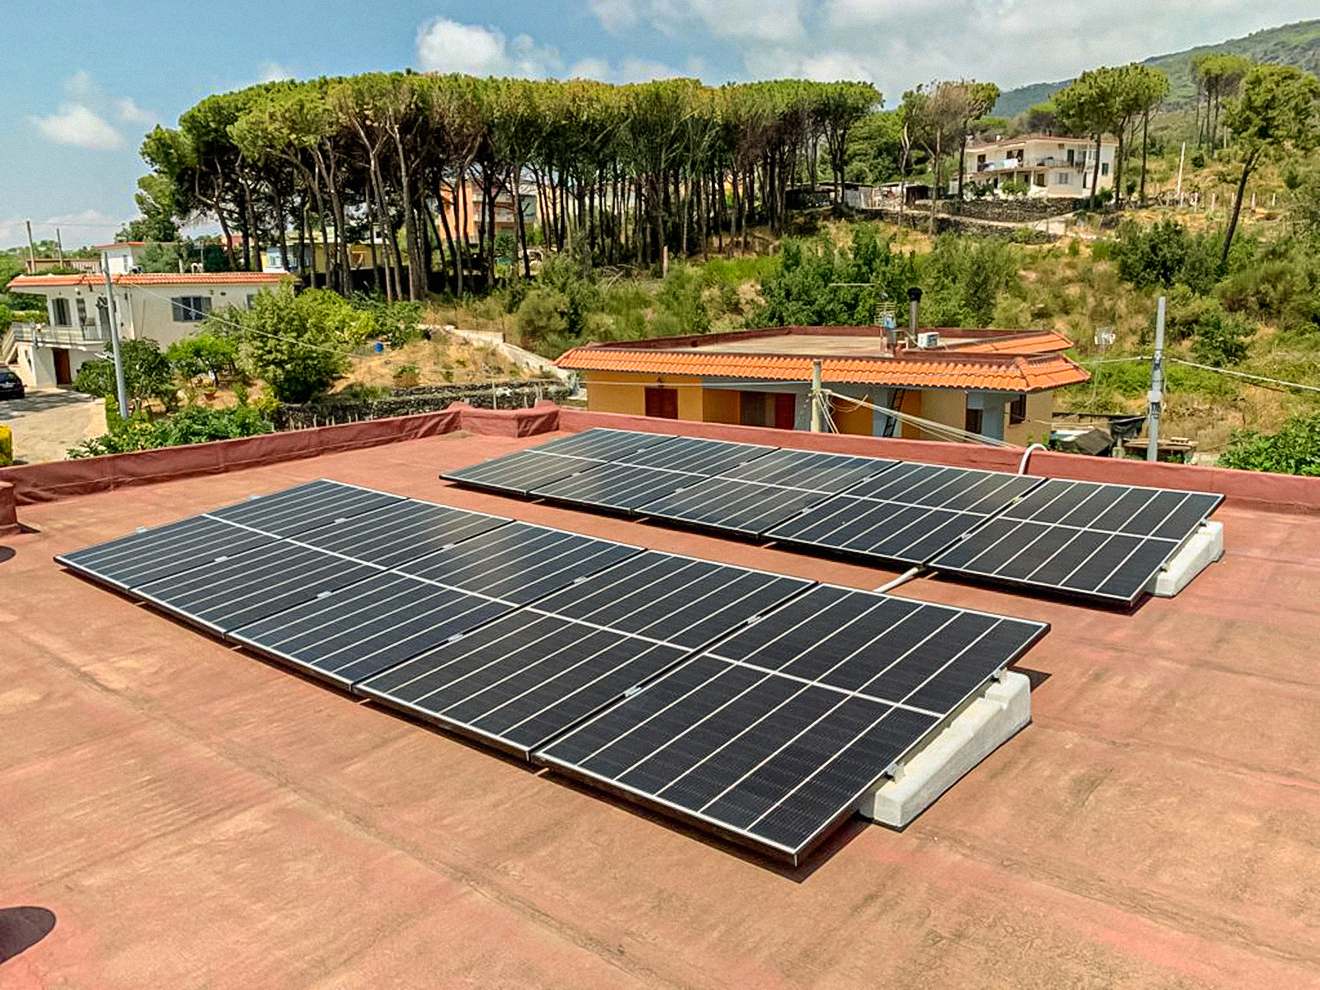 Impianto Fotovoltaico 4 kWp con 10 kWh di accumulo Torre del Greco, Napoli dmt solar impianti fotovoltaici partner tesla, maxeon sunpower, solaredge